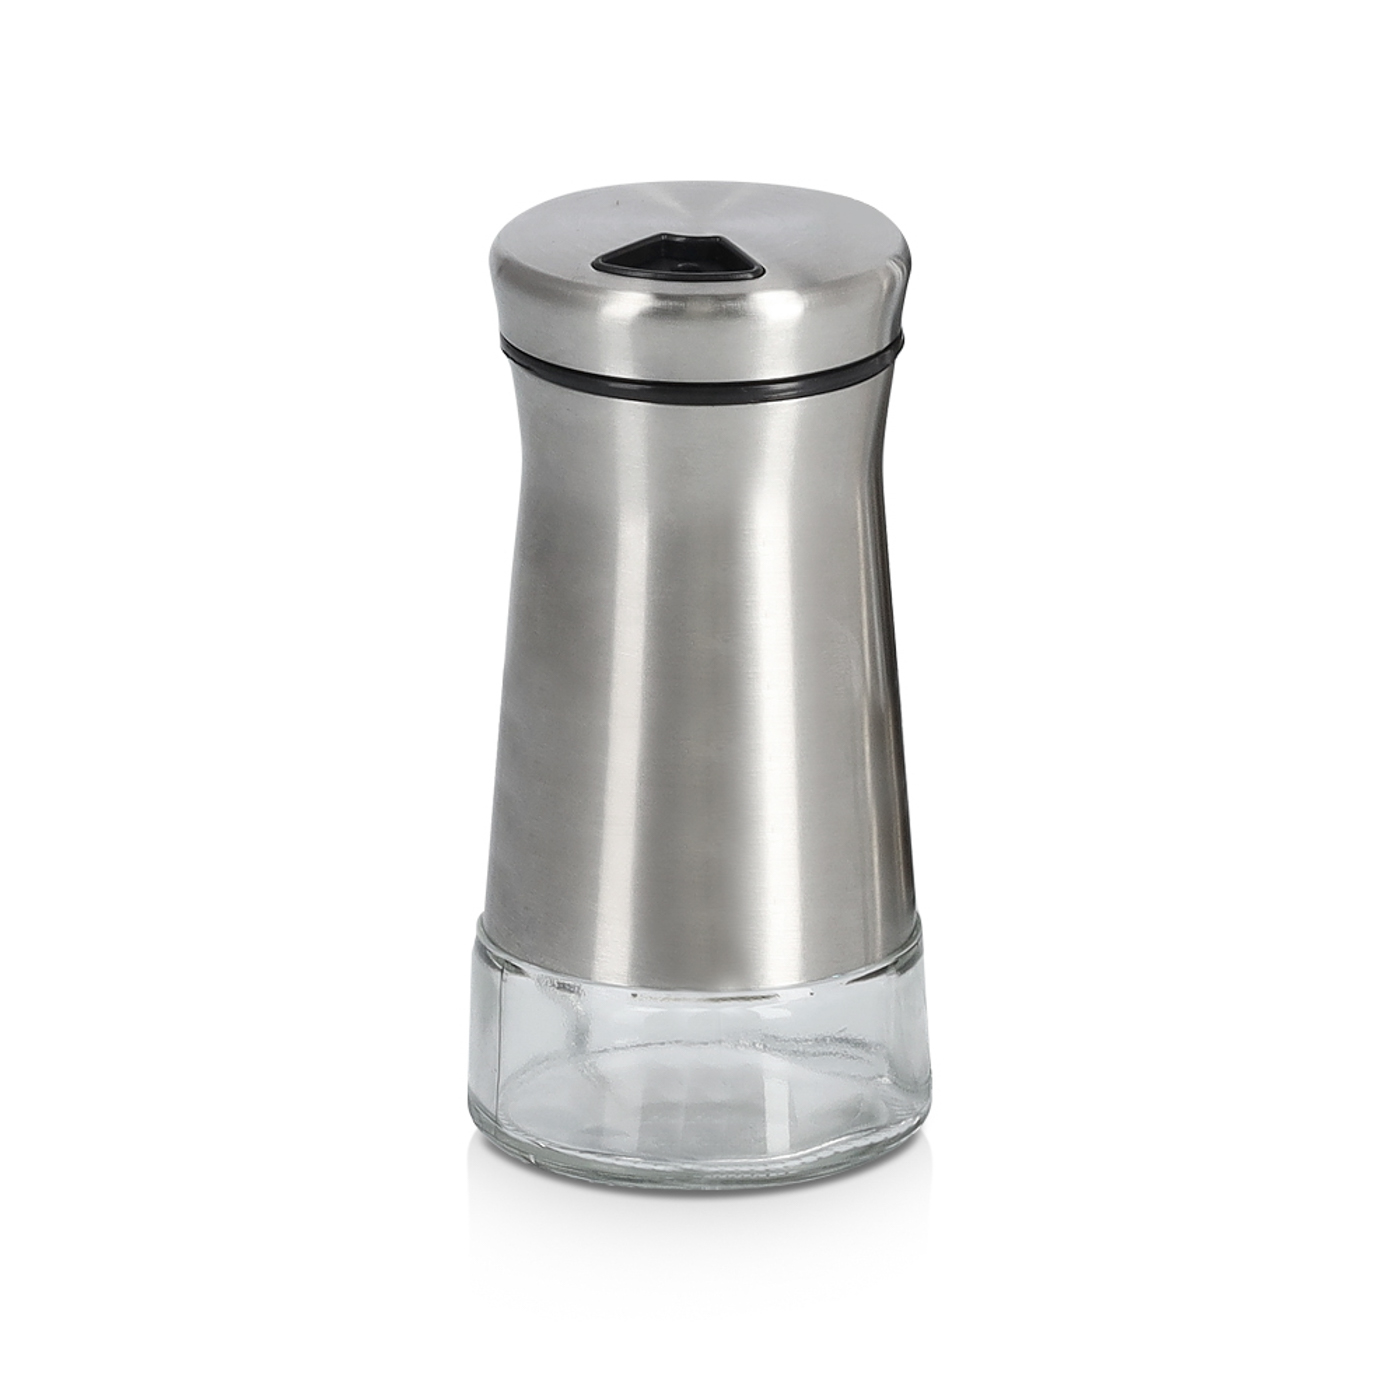 Gewürzstreuer, Glas; Edelstahl gebürstet, Ø5x11,3 cm. Farbe: transparent Salz, Pfeffer oder andere Gewürze stilvoll servieren. Mit dem praktischen